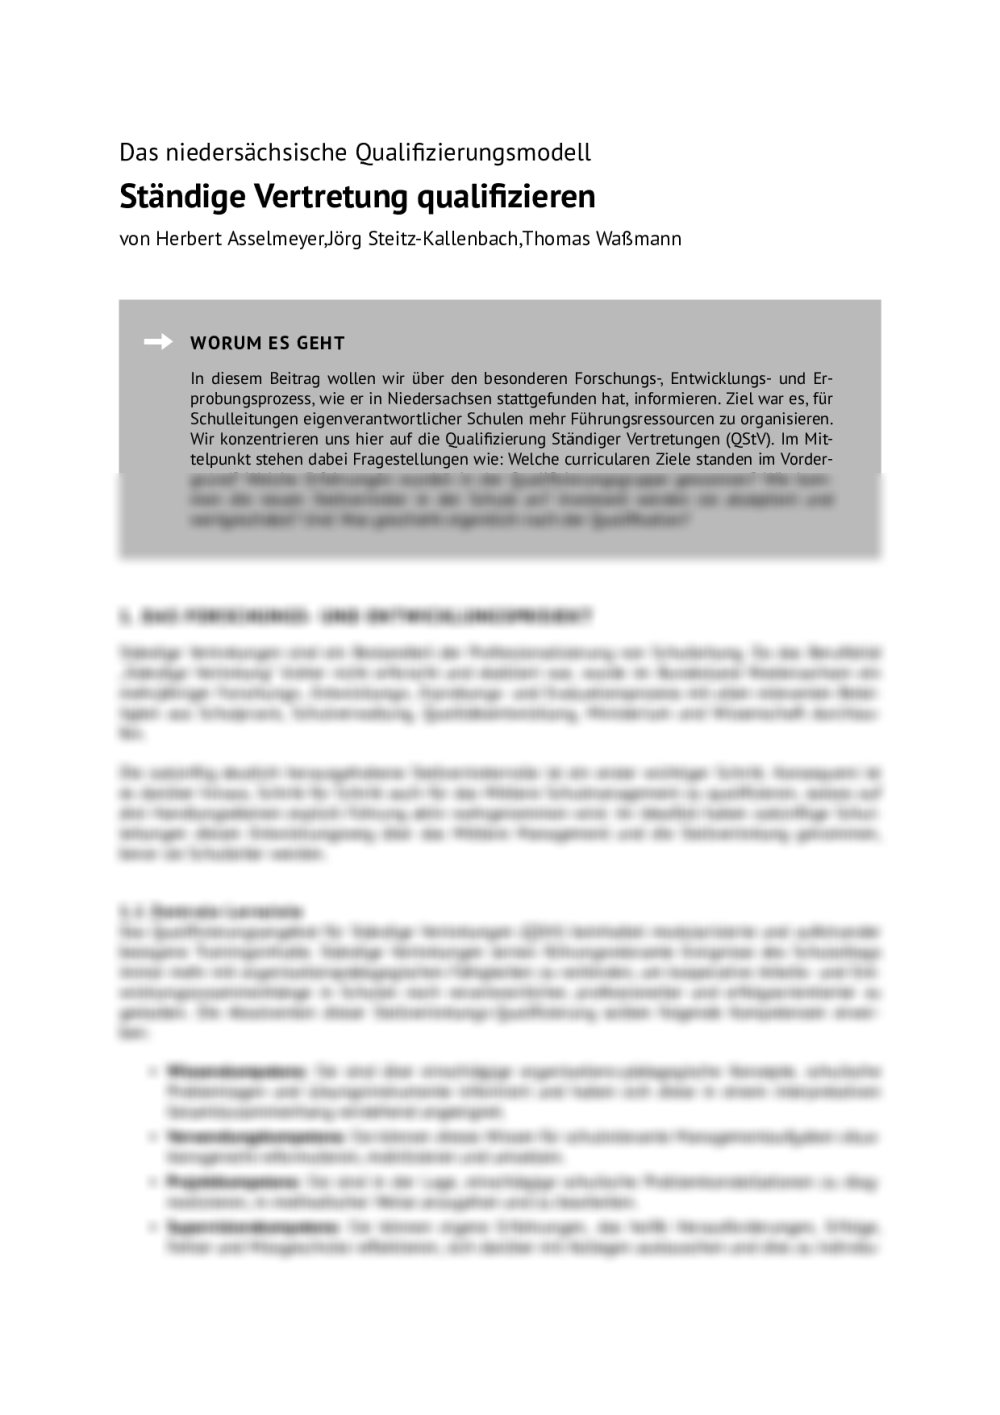 Das niedersächsische Qualifizierungsmodell - Seite 1